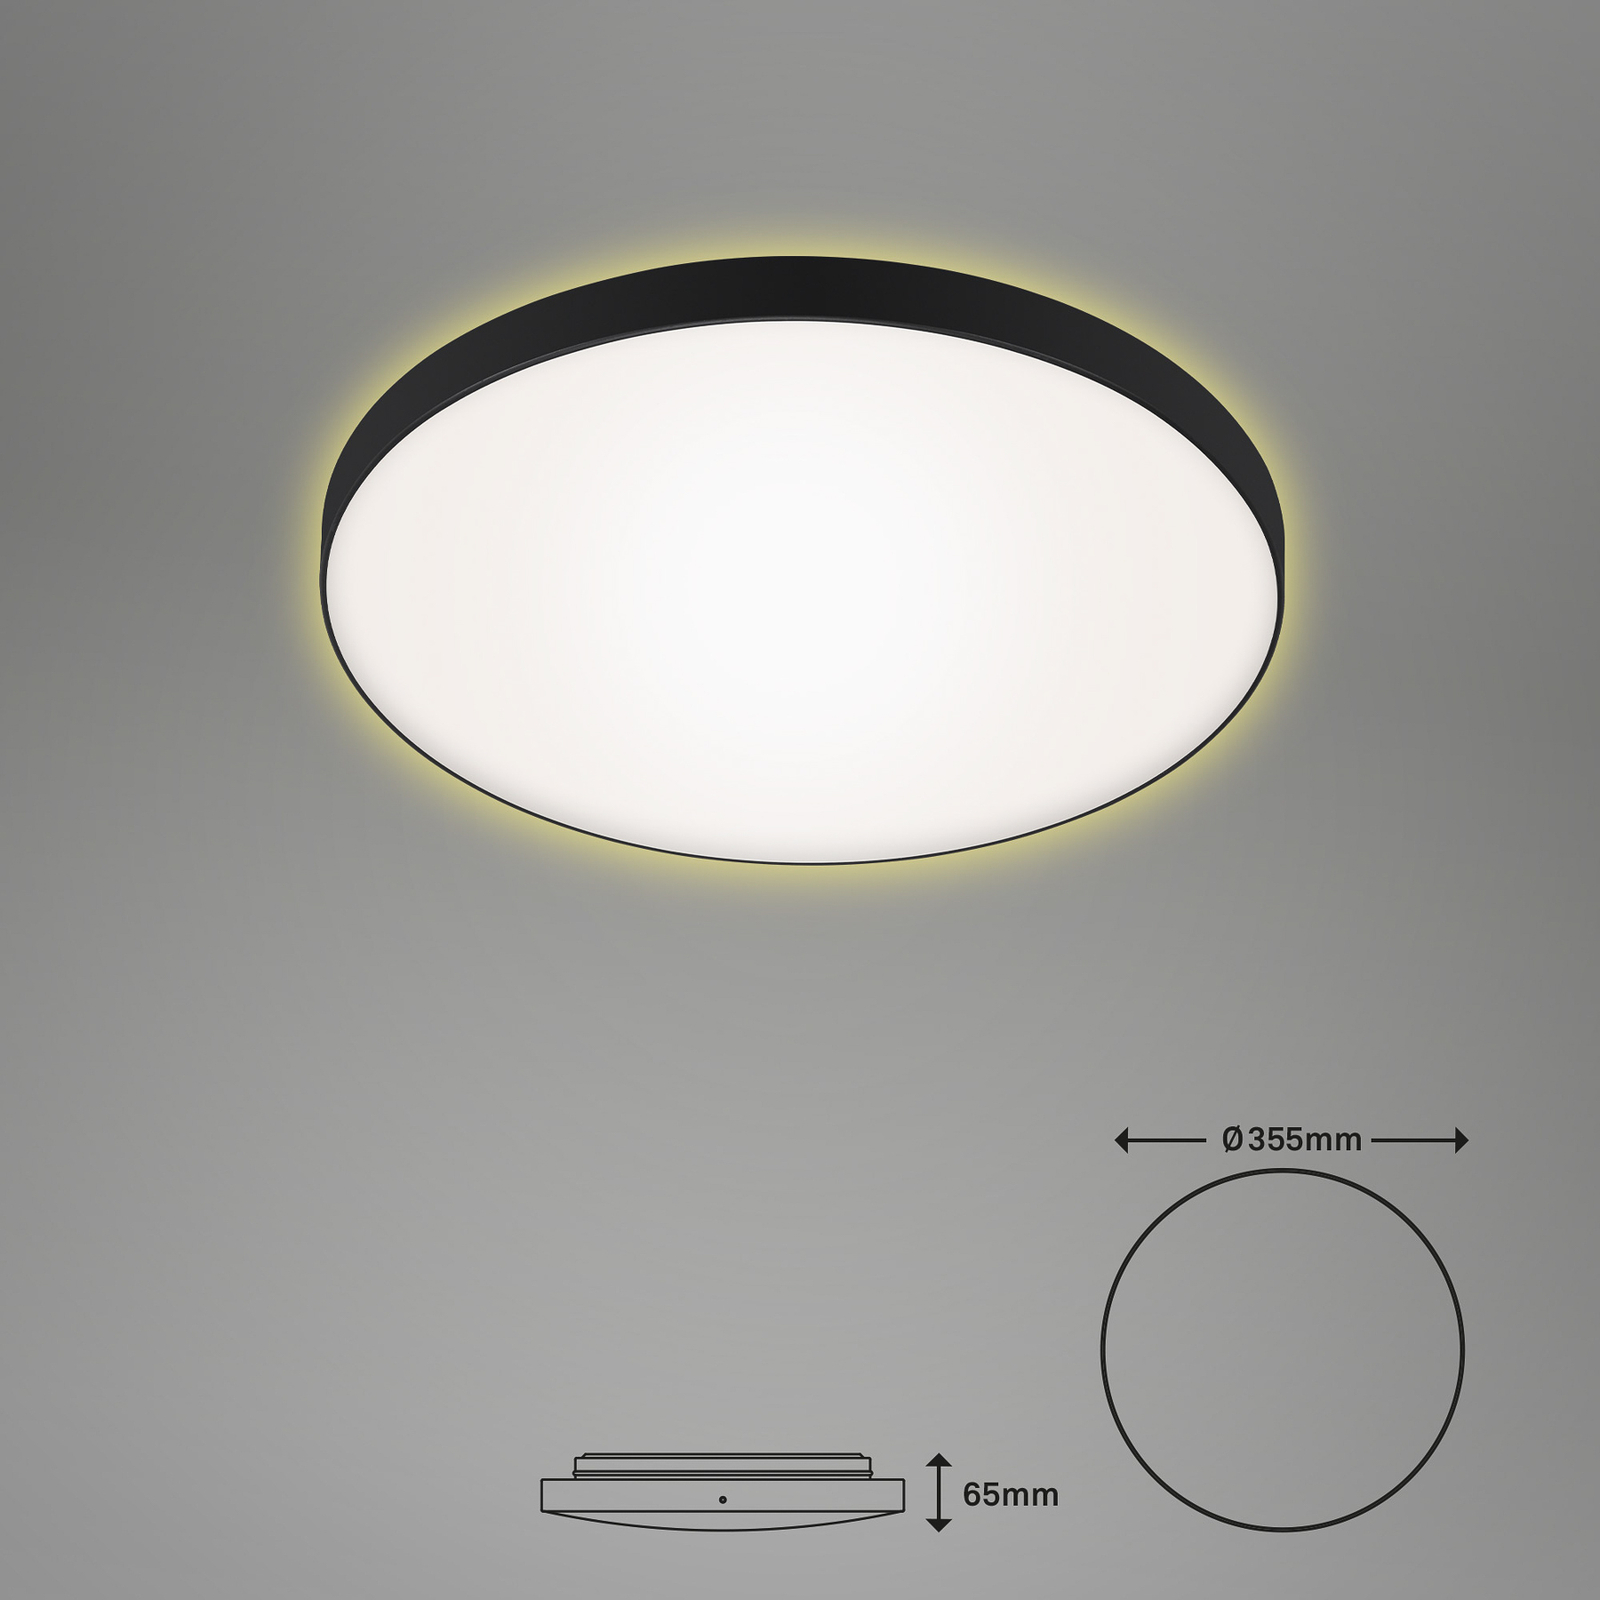 LED stropní svítidlo Flet s podsvícením, Ø 35,5 cm